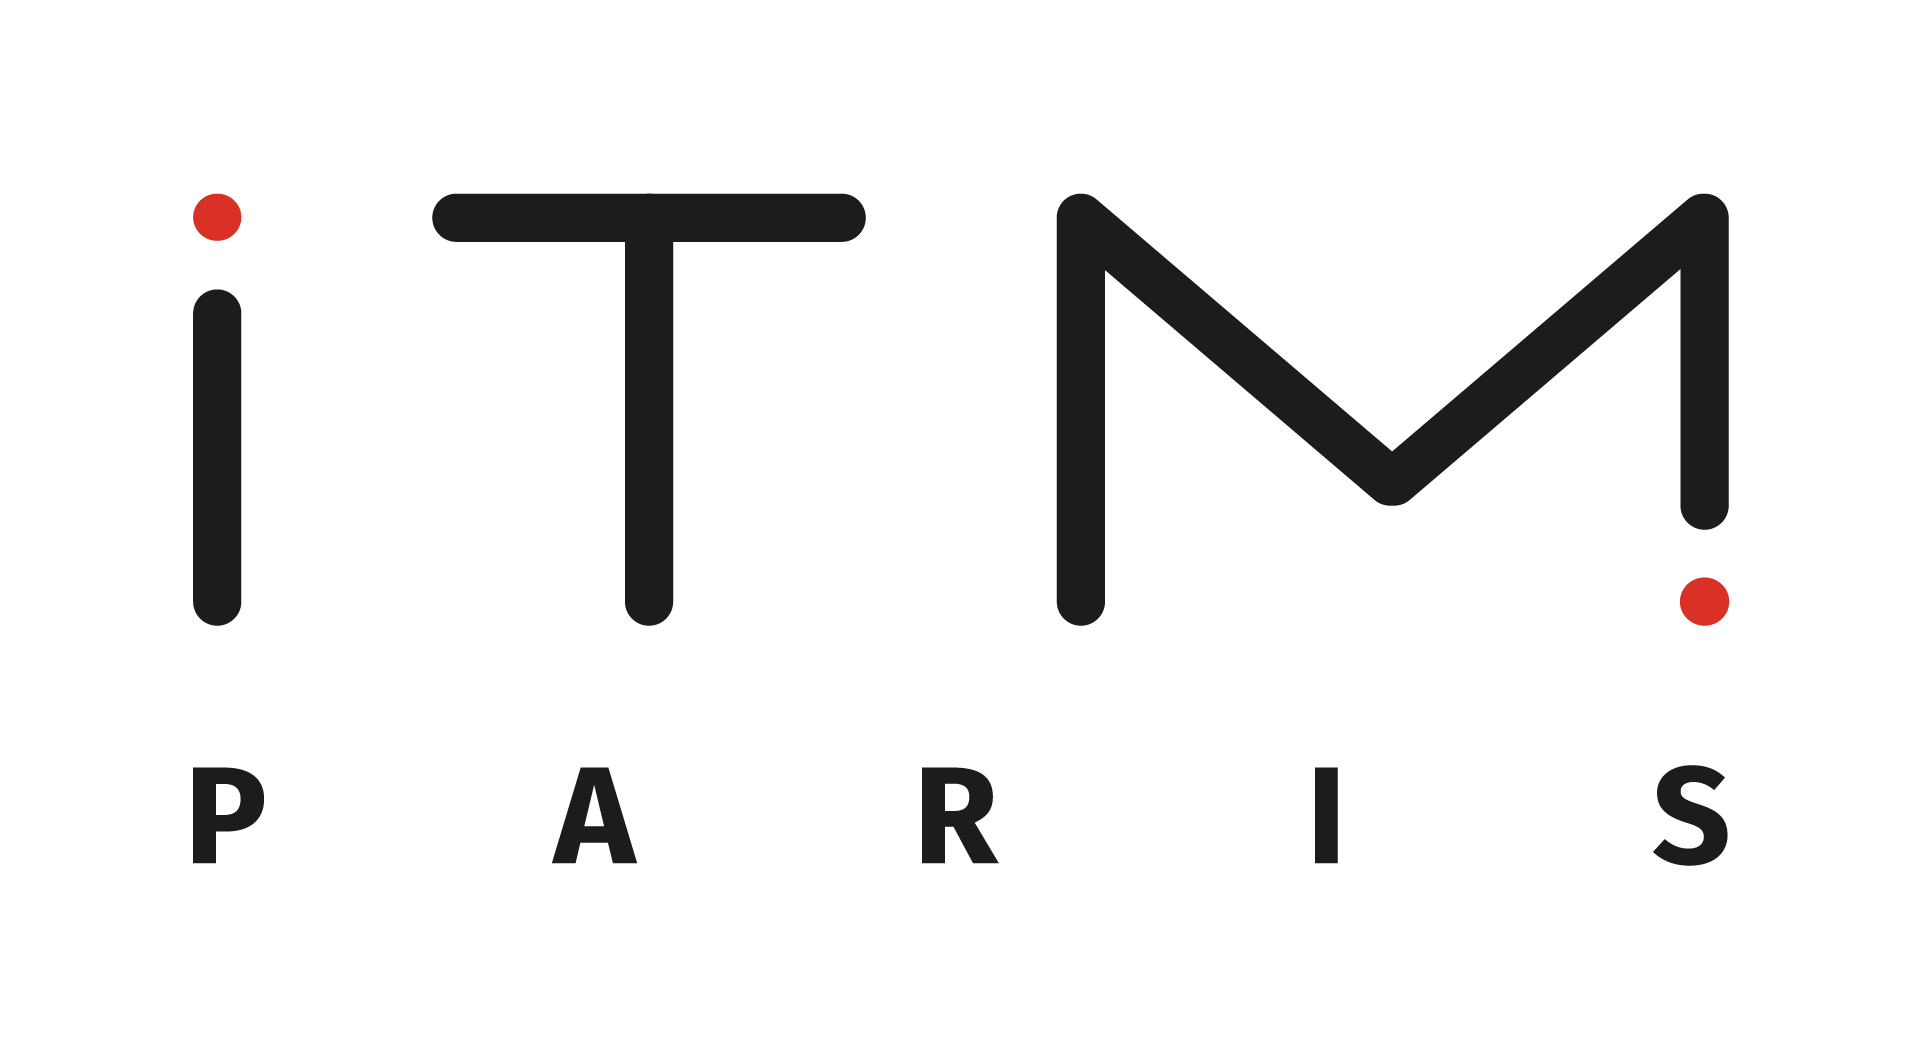 Logo ITM Paris